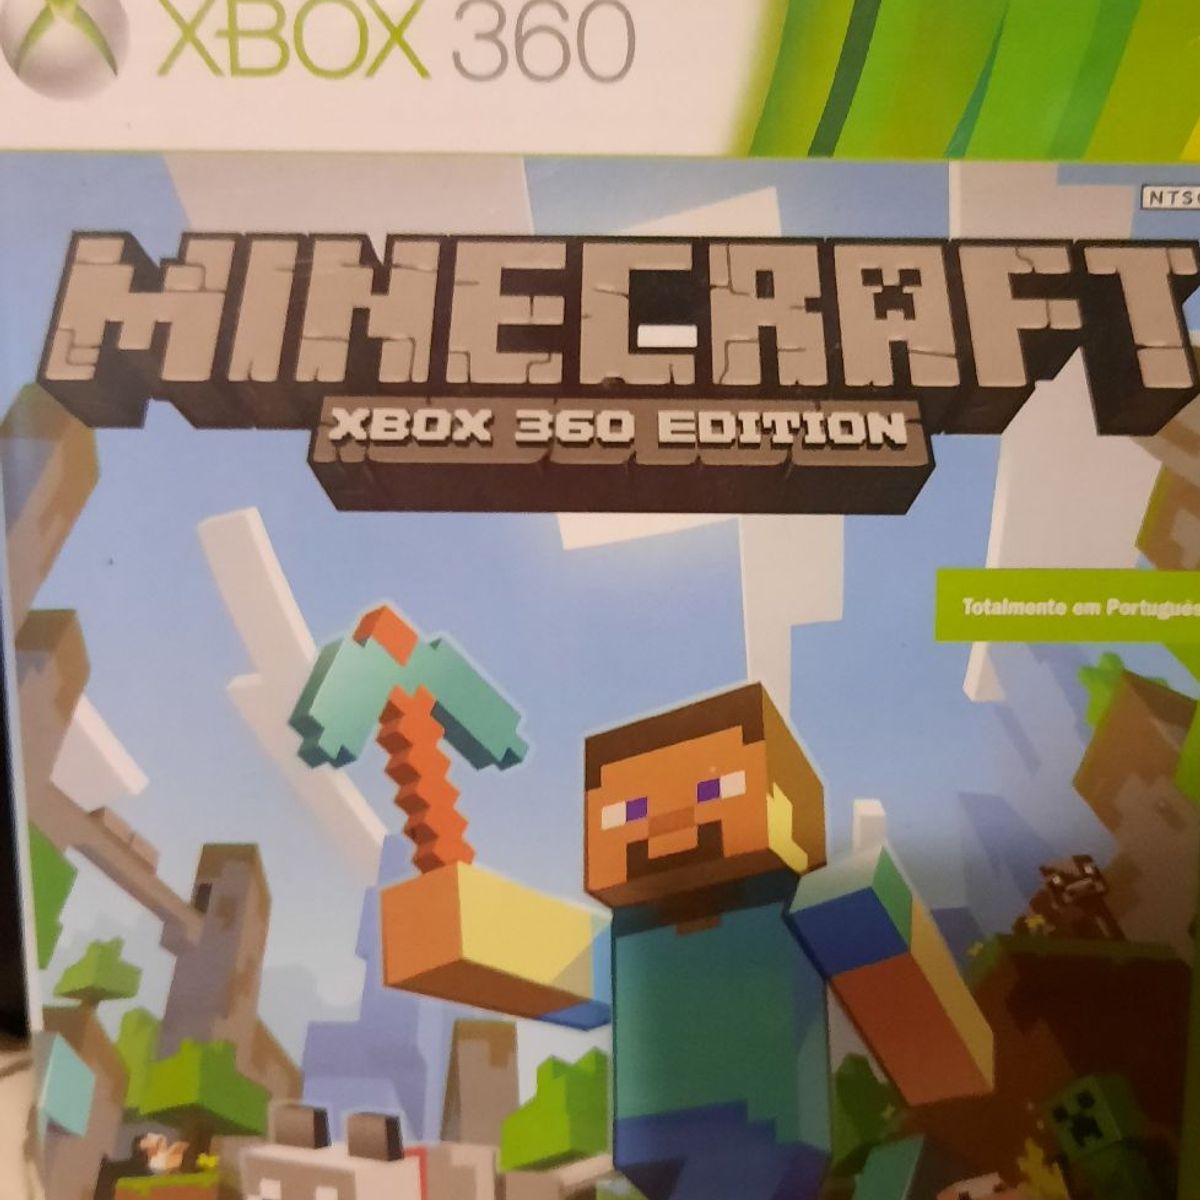 Jogo Minecraft Xbox 360 Usado Original Midia Fisica